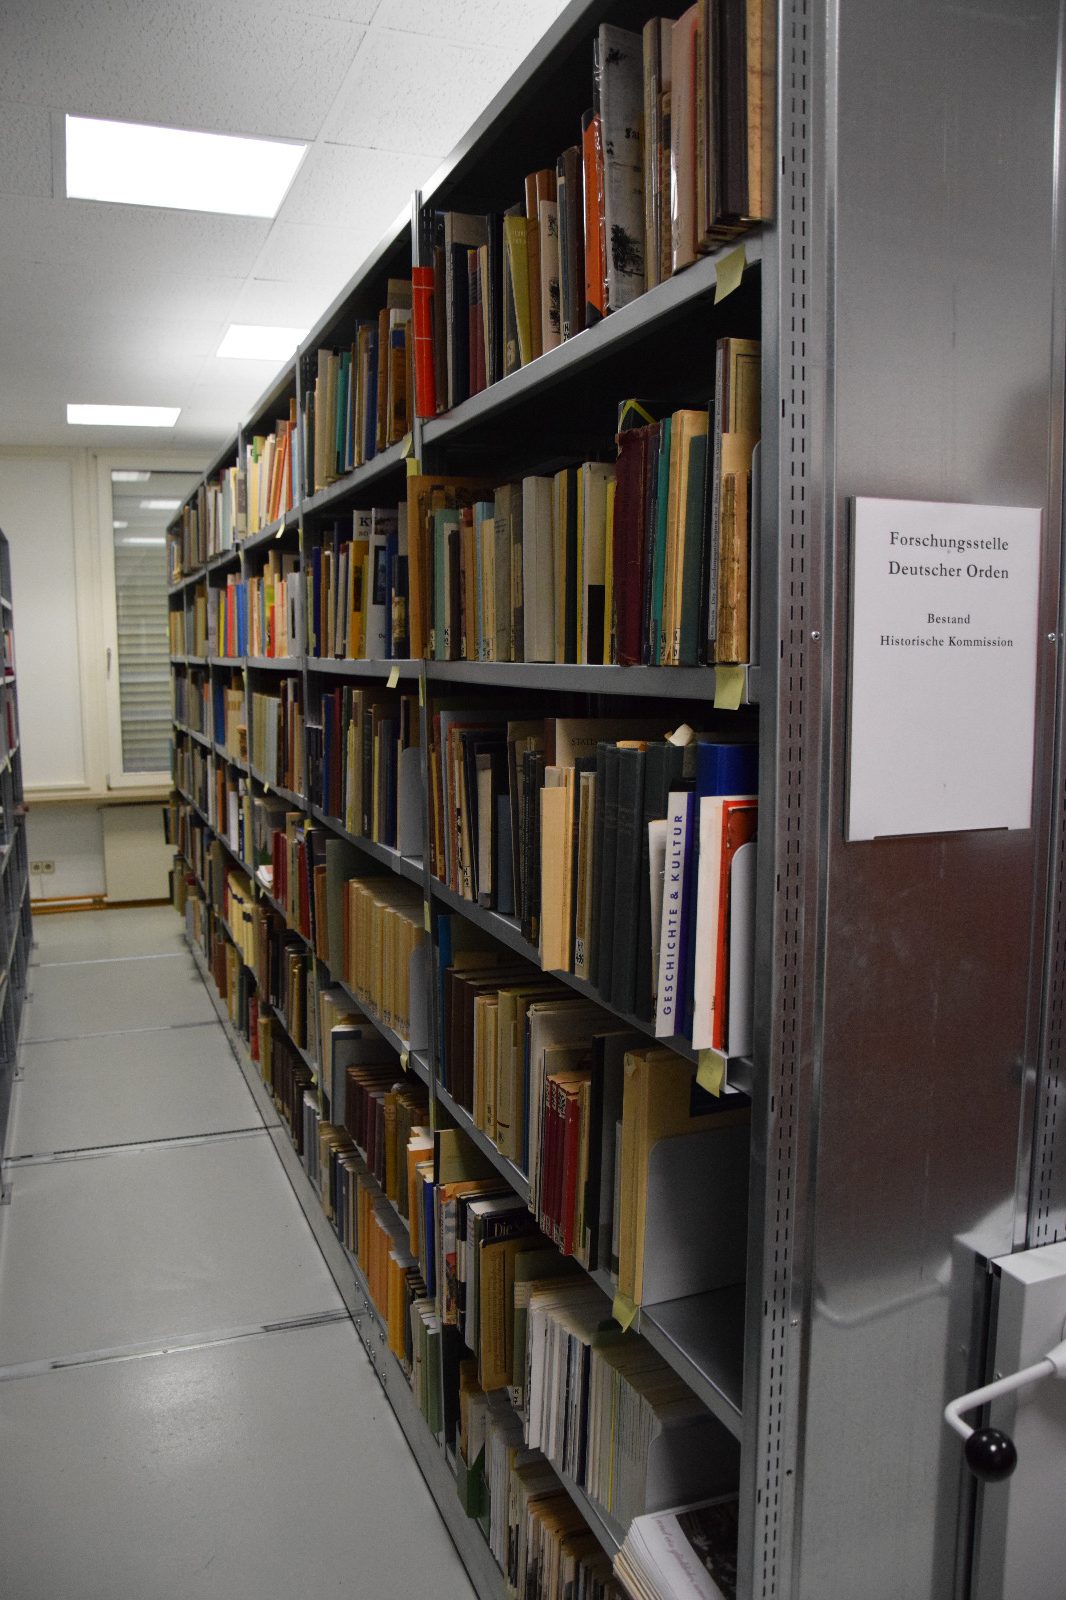 Das Bild zeigt ein Rollregal mit Büchern in der Bibliothek der Forschungsstelle des Deutschen Ordens.